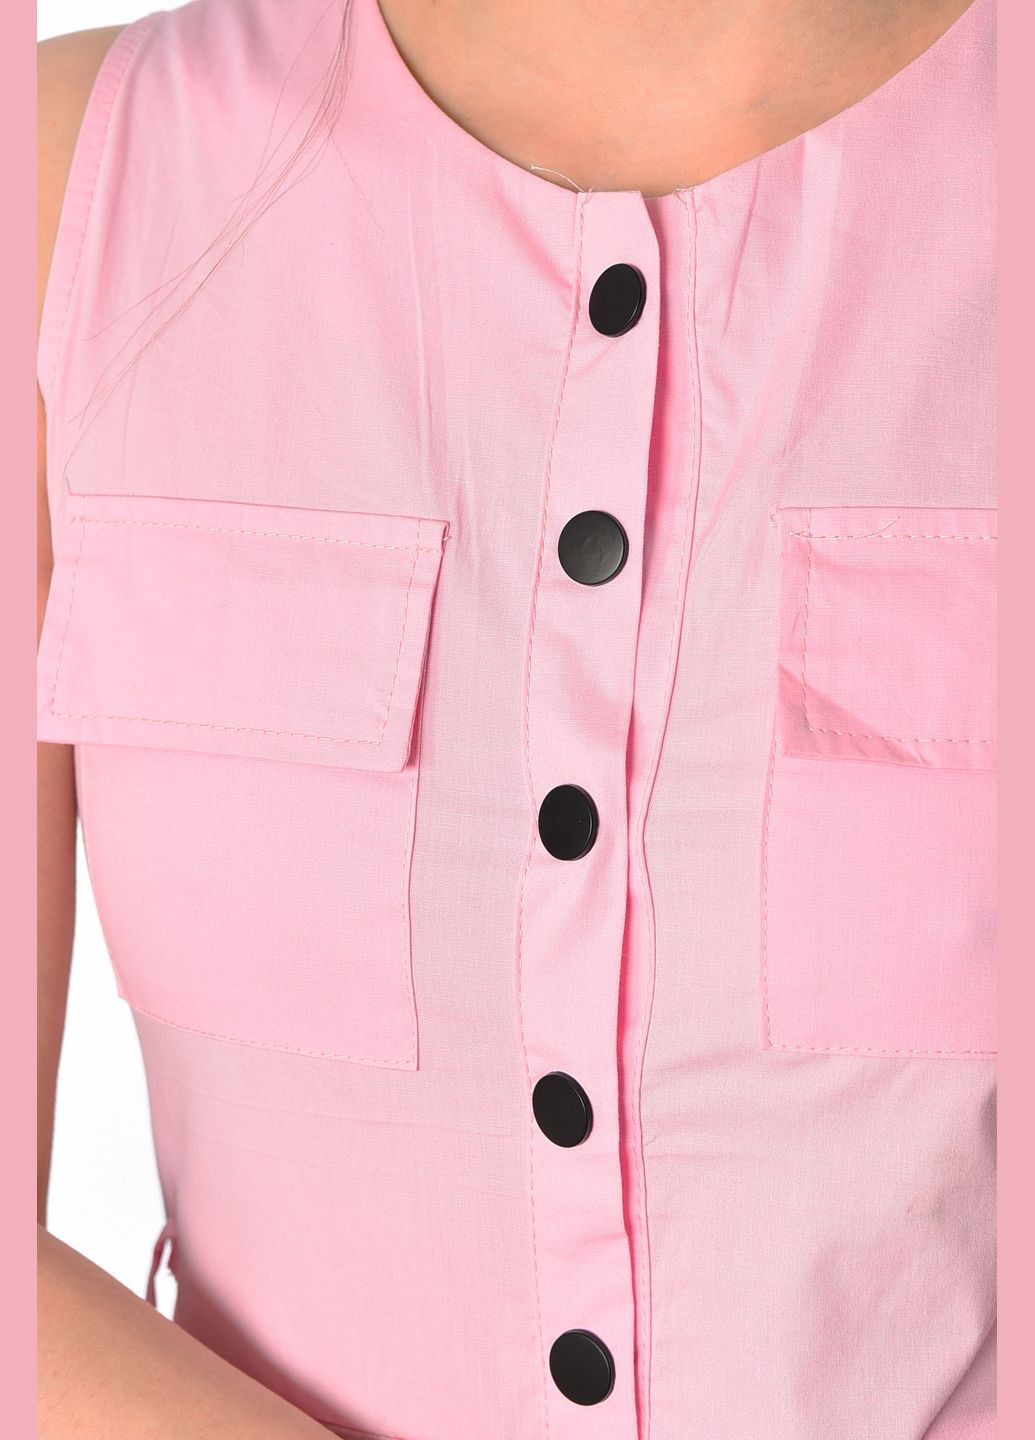 Комбінезон жіночий рожевого кольору Let's Shop комбінезон-брюки малюнок рожевий вечірній поліестер